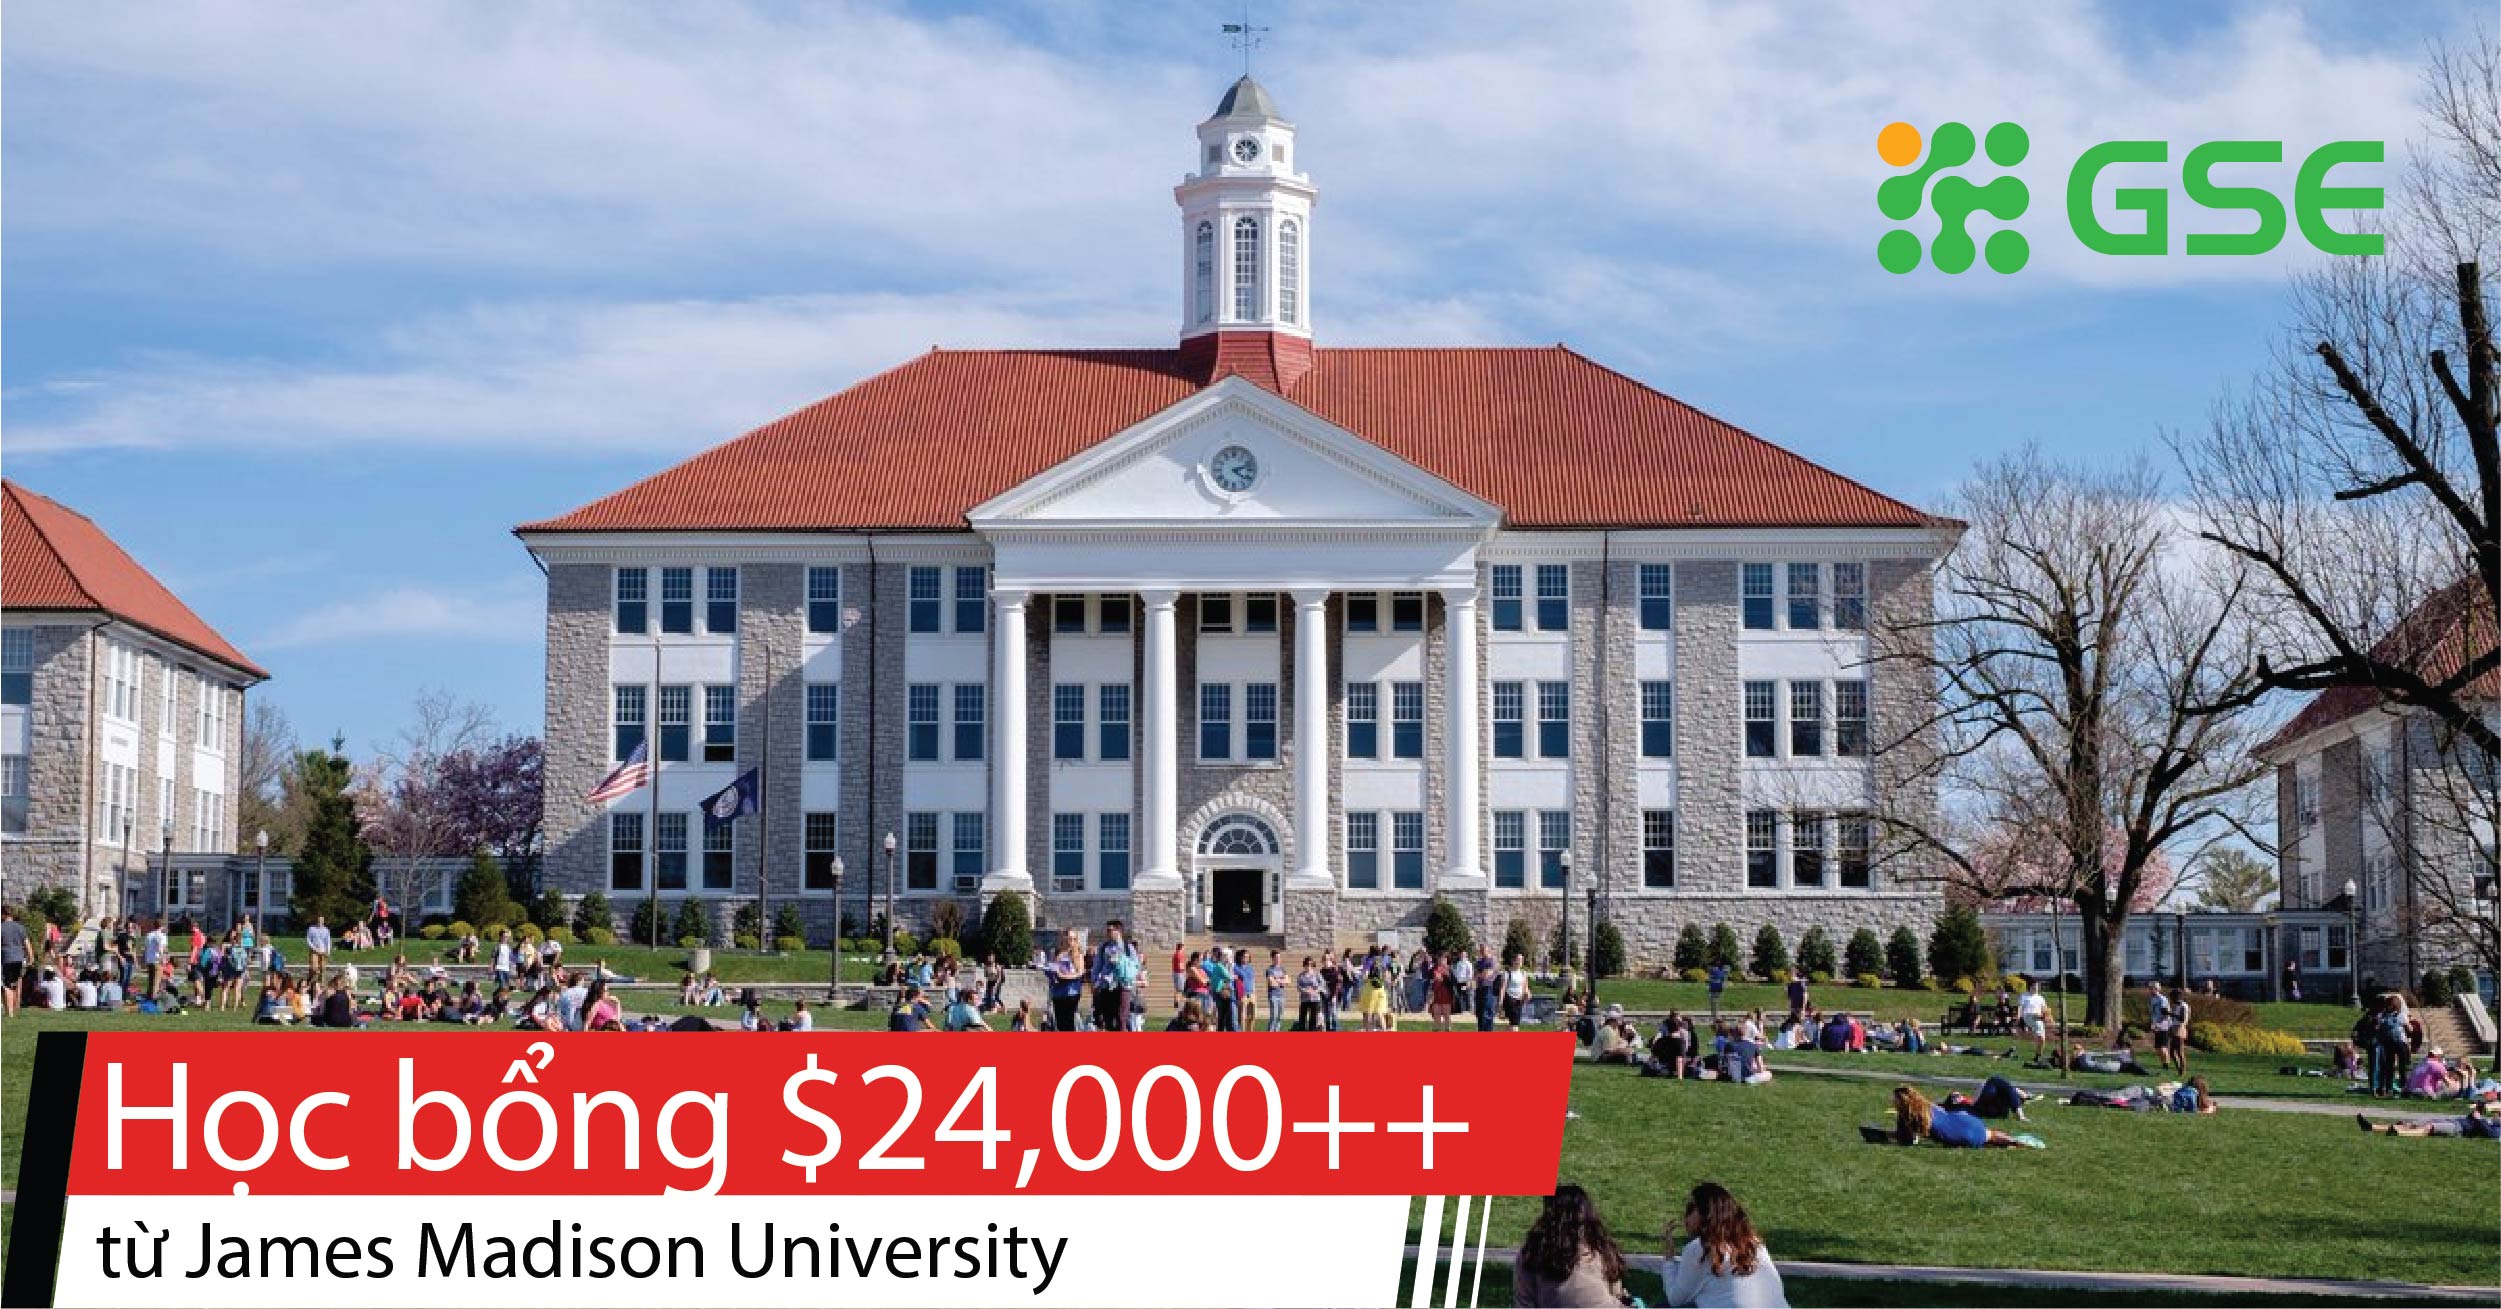 hoc bong my james madison 05 - Học bổng lên đến 24,000 USD từ James Madison University - Mỹ